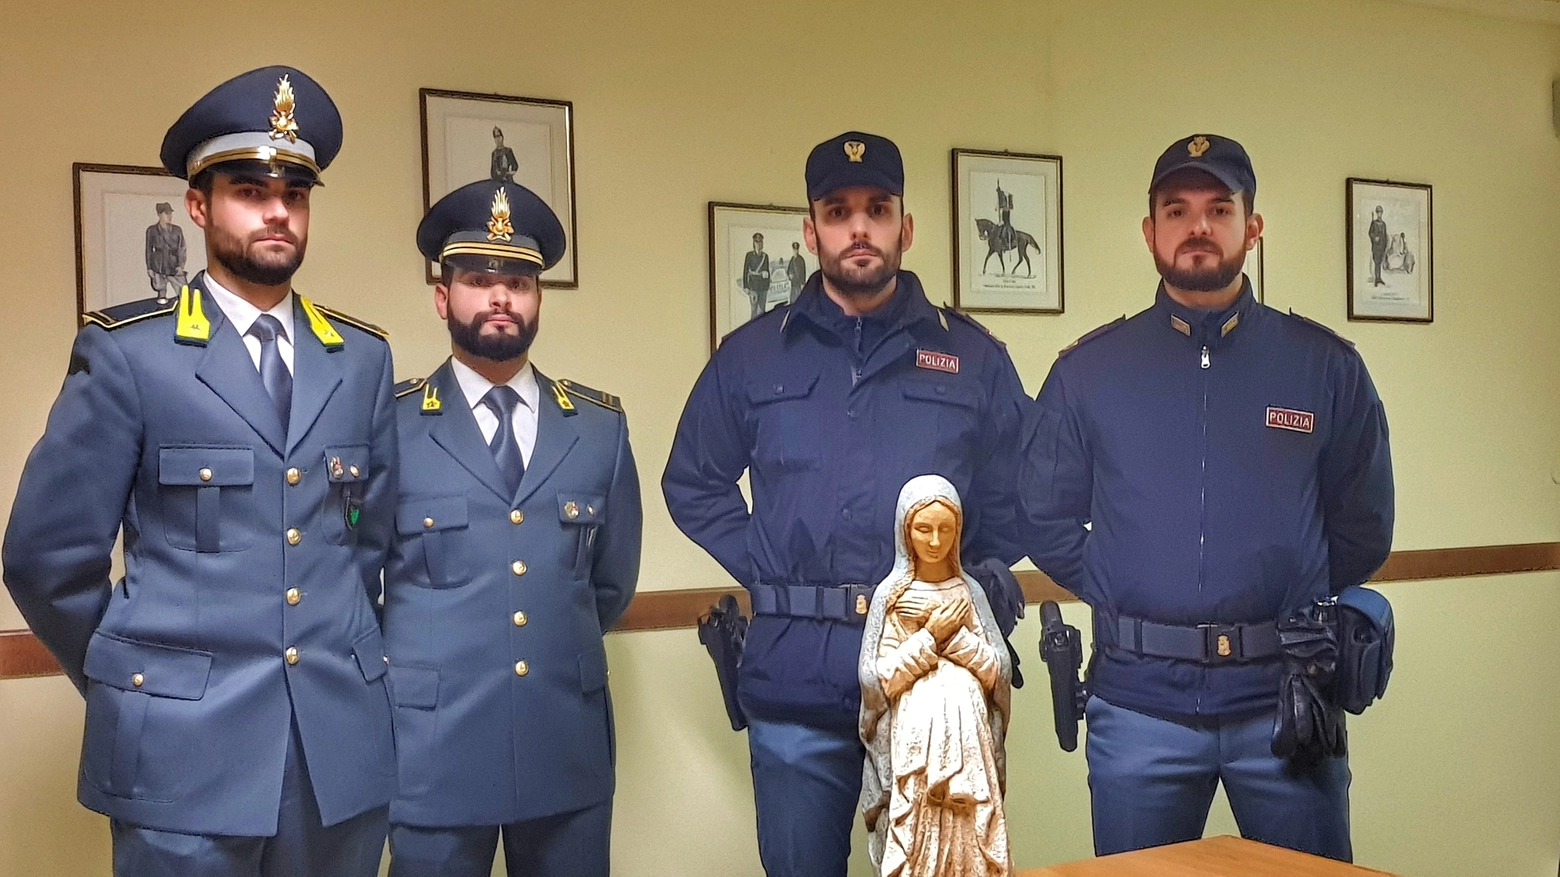 Ritrovata la statuetta della Madonna rubata in Duomo a Mantova